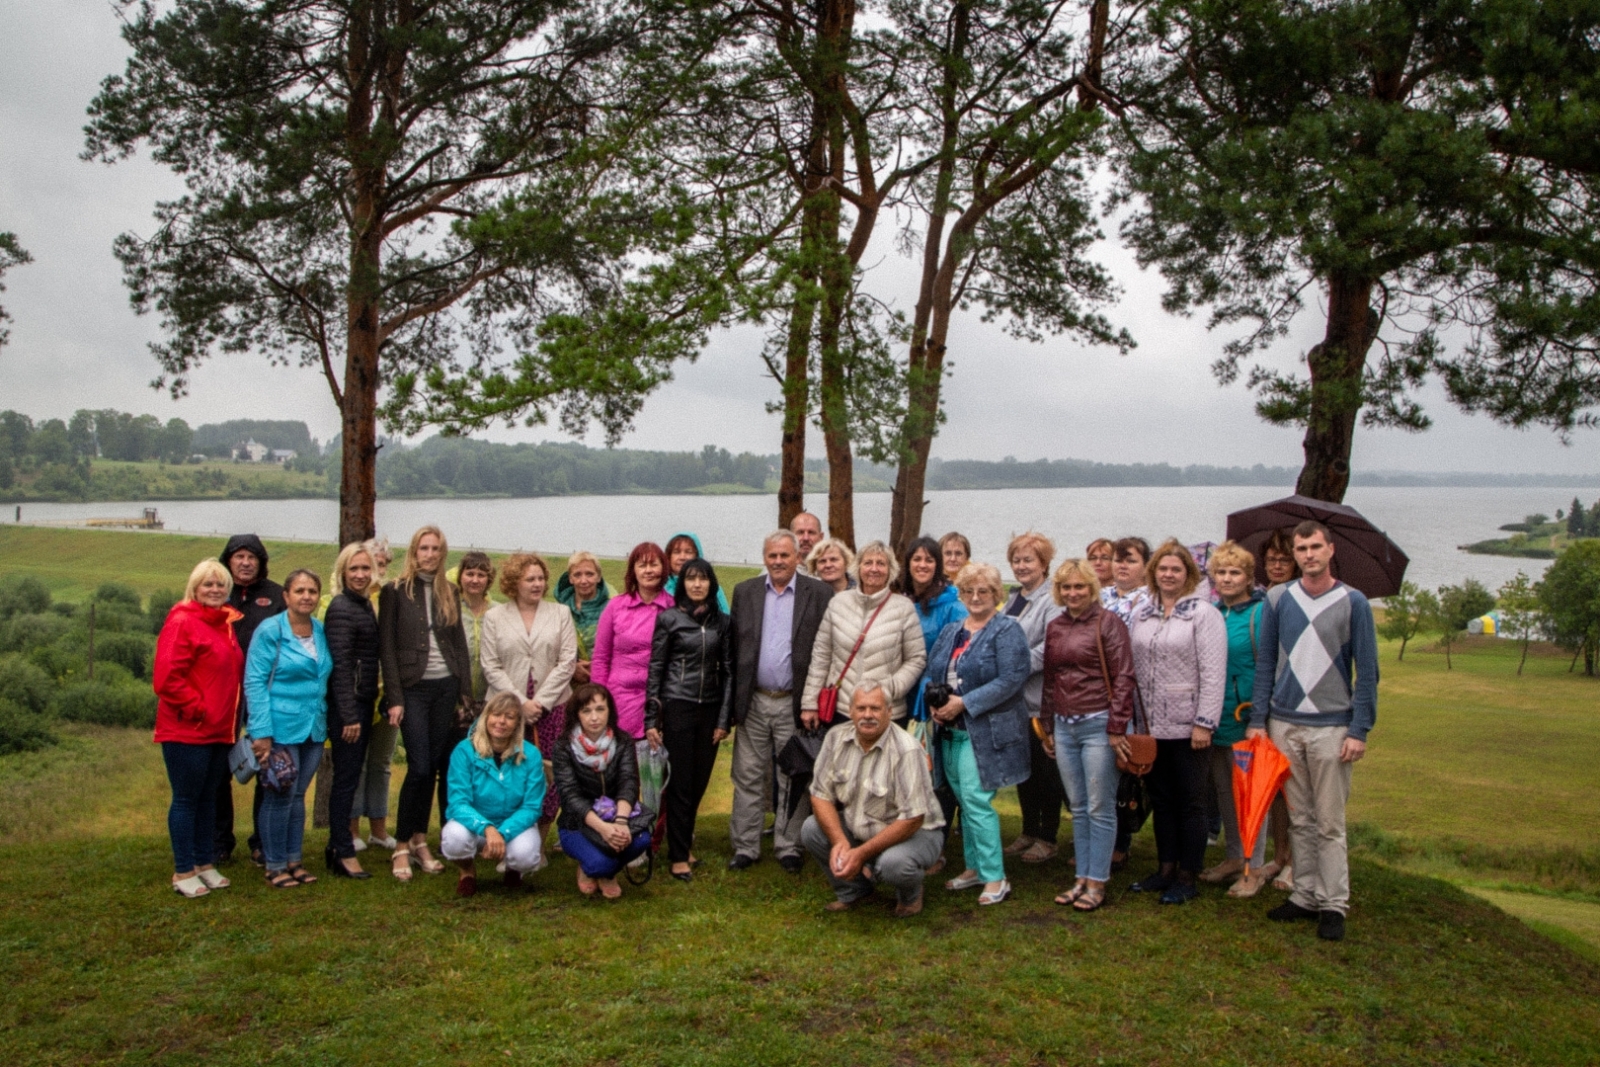 Jēkabpils novada pašvaldības pārstāvji stāv kopbildei pilskalna galā, fonā ezers